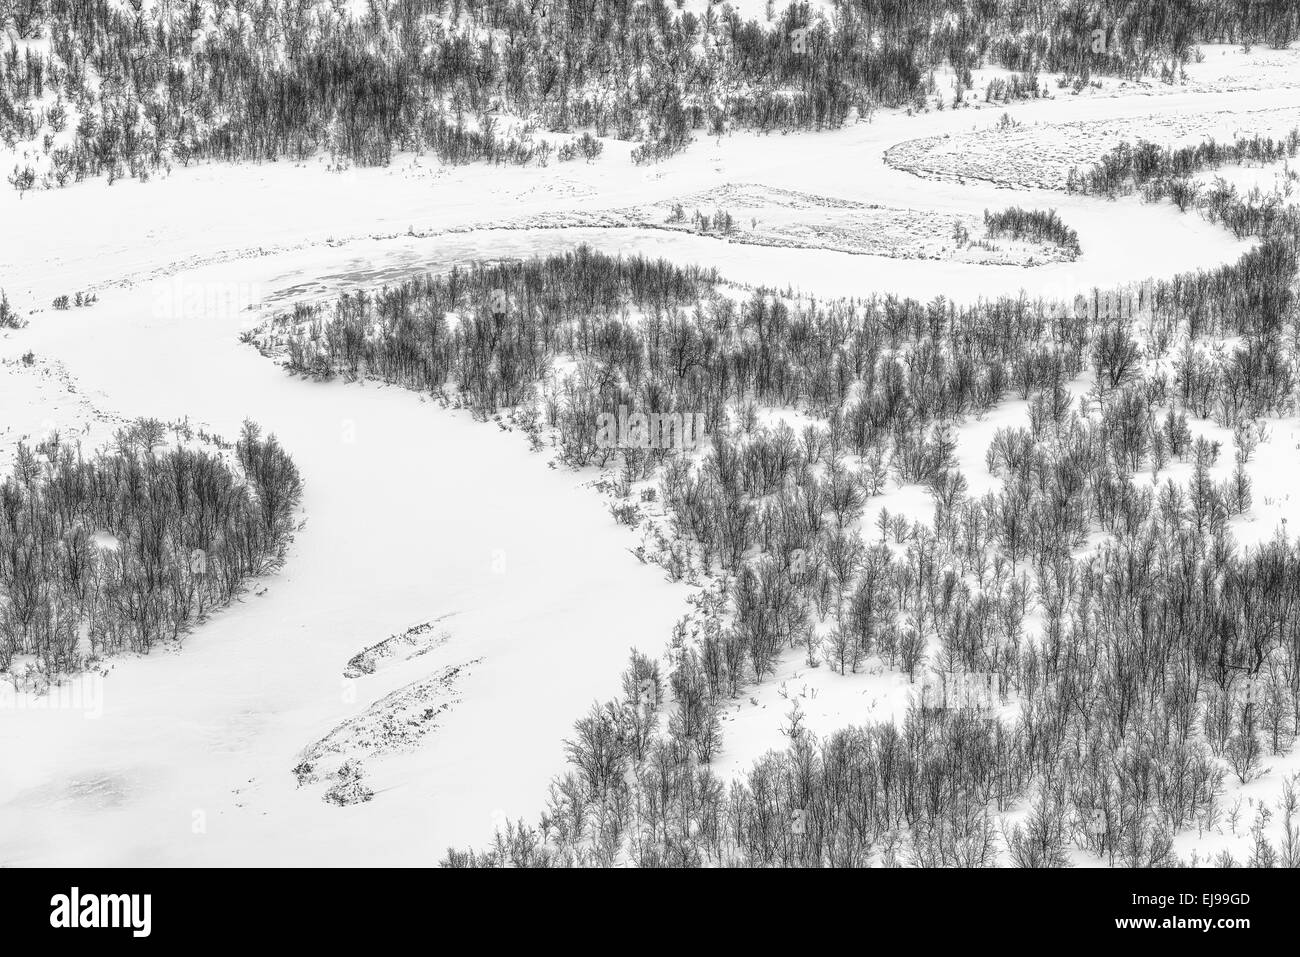 river Vistasaelven, Vistasdalen, Lapland, Sweden Stock Photo